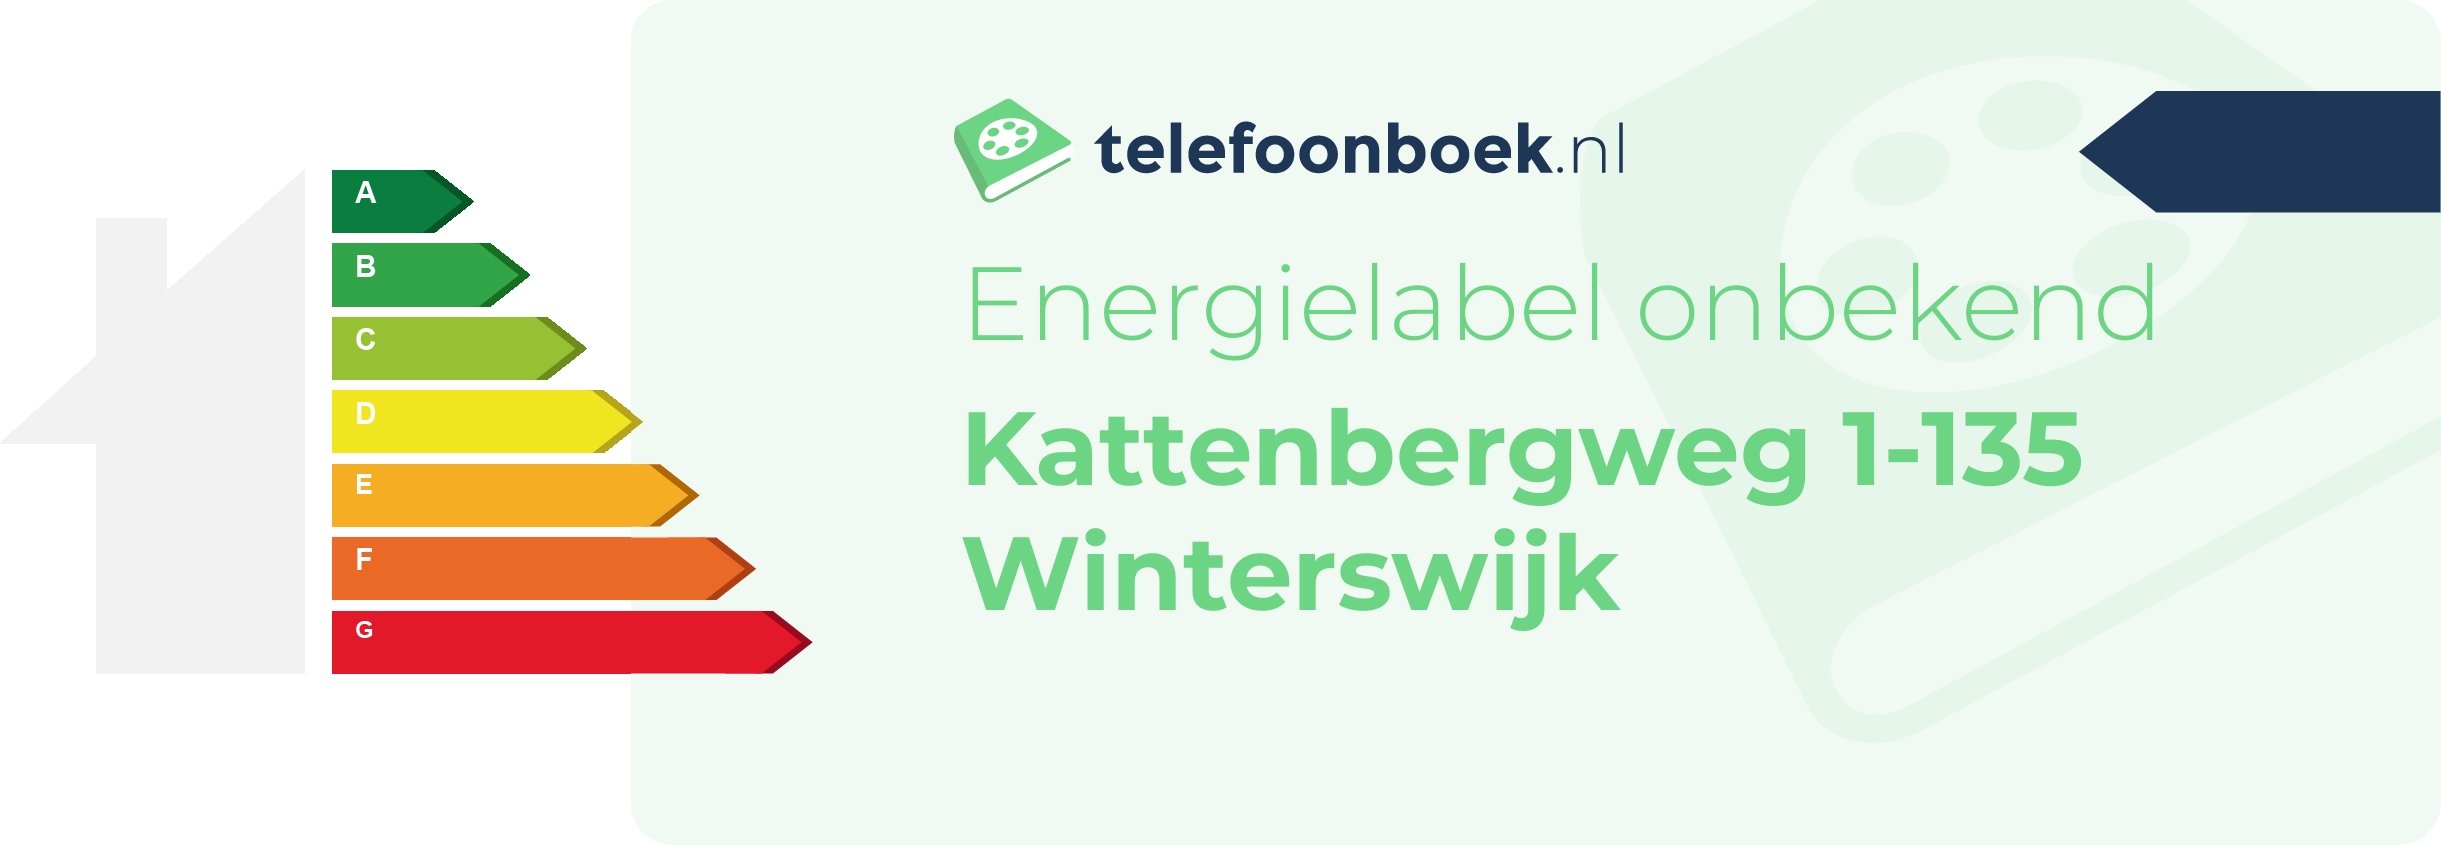 Energielabel Kattenbergweg 1-135 Winterswijk